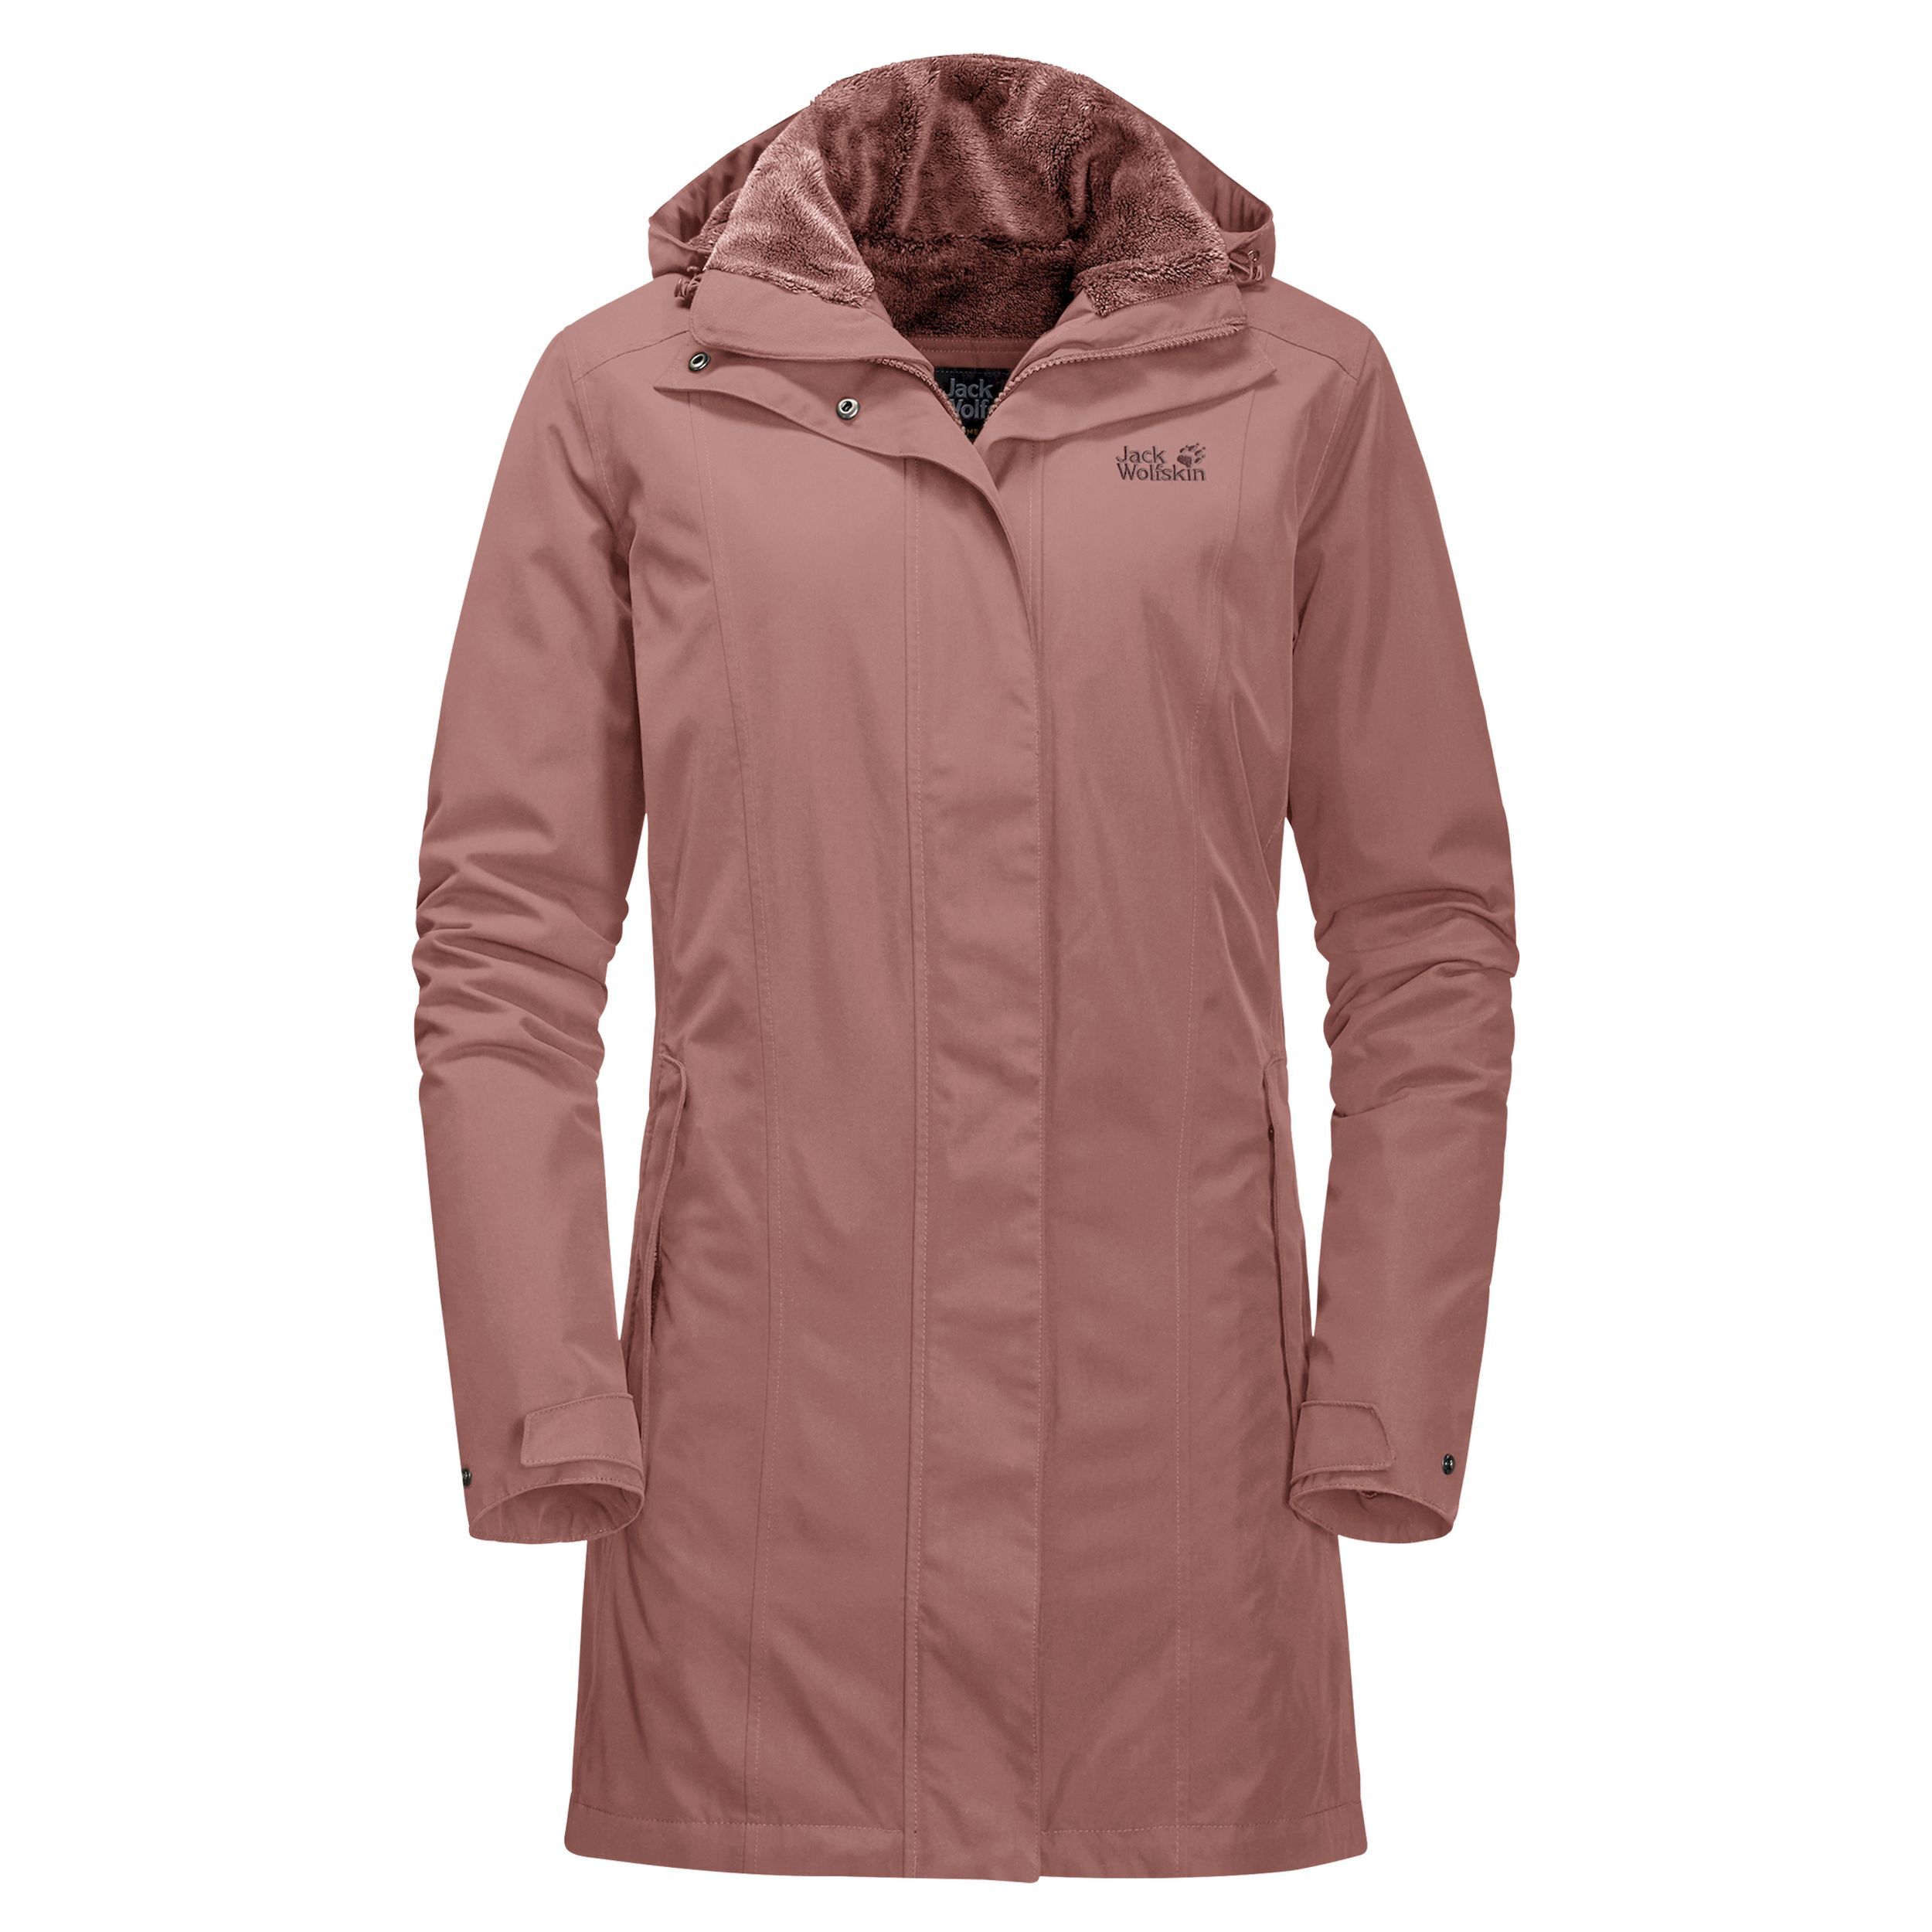 Jack Wolfskin Madison Avenue Coat - Waterproof jacket - Women's